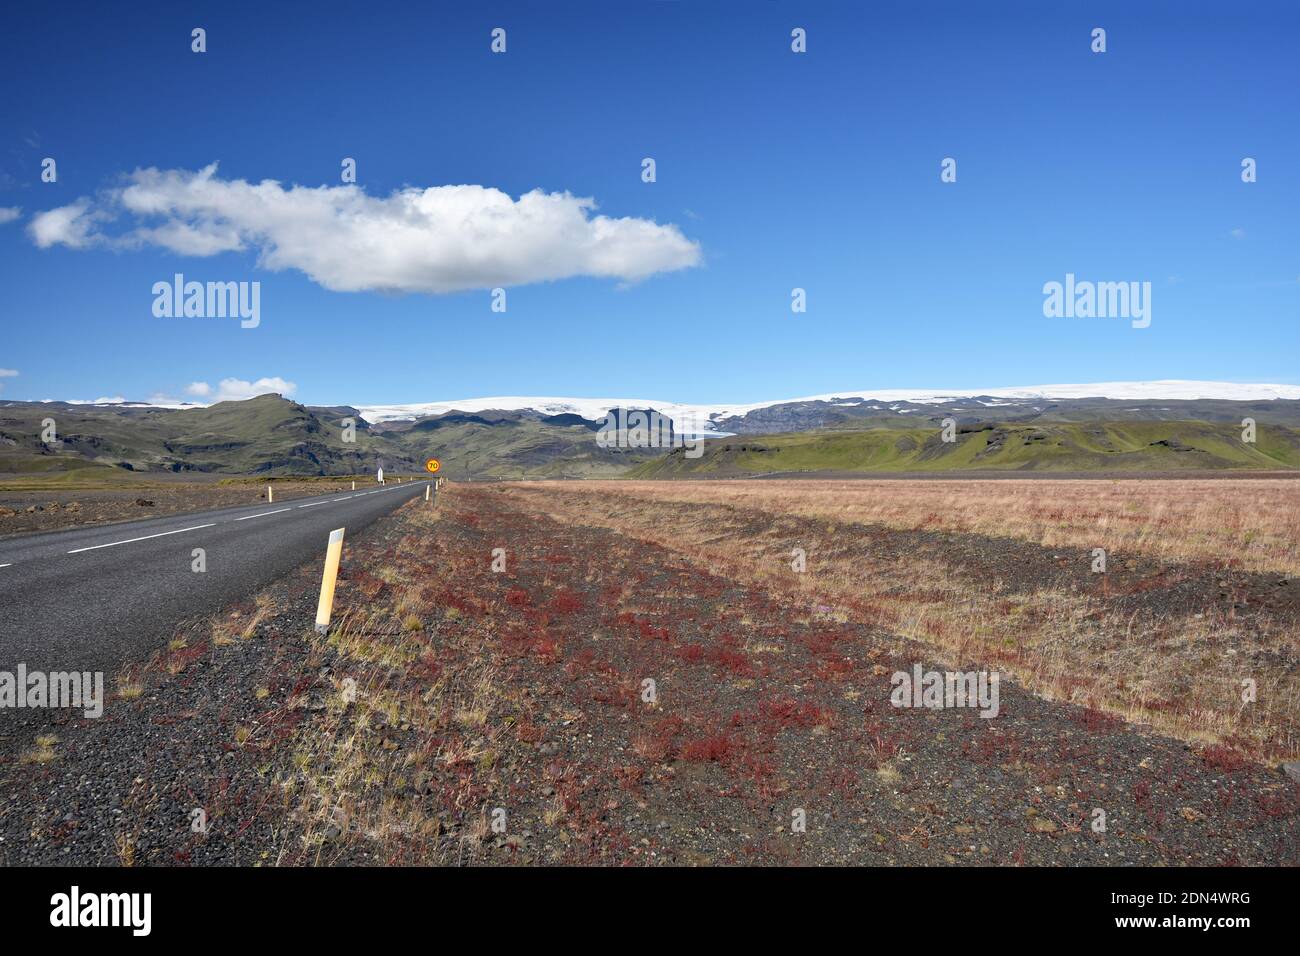 Una strada conduce al ghiacciaio Solheimajokull, parte di Myrdalsjokull e Katla, appena fuori dalla tangenziale principale sulla costa meridionale dell'Islanda. Foto Stock